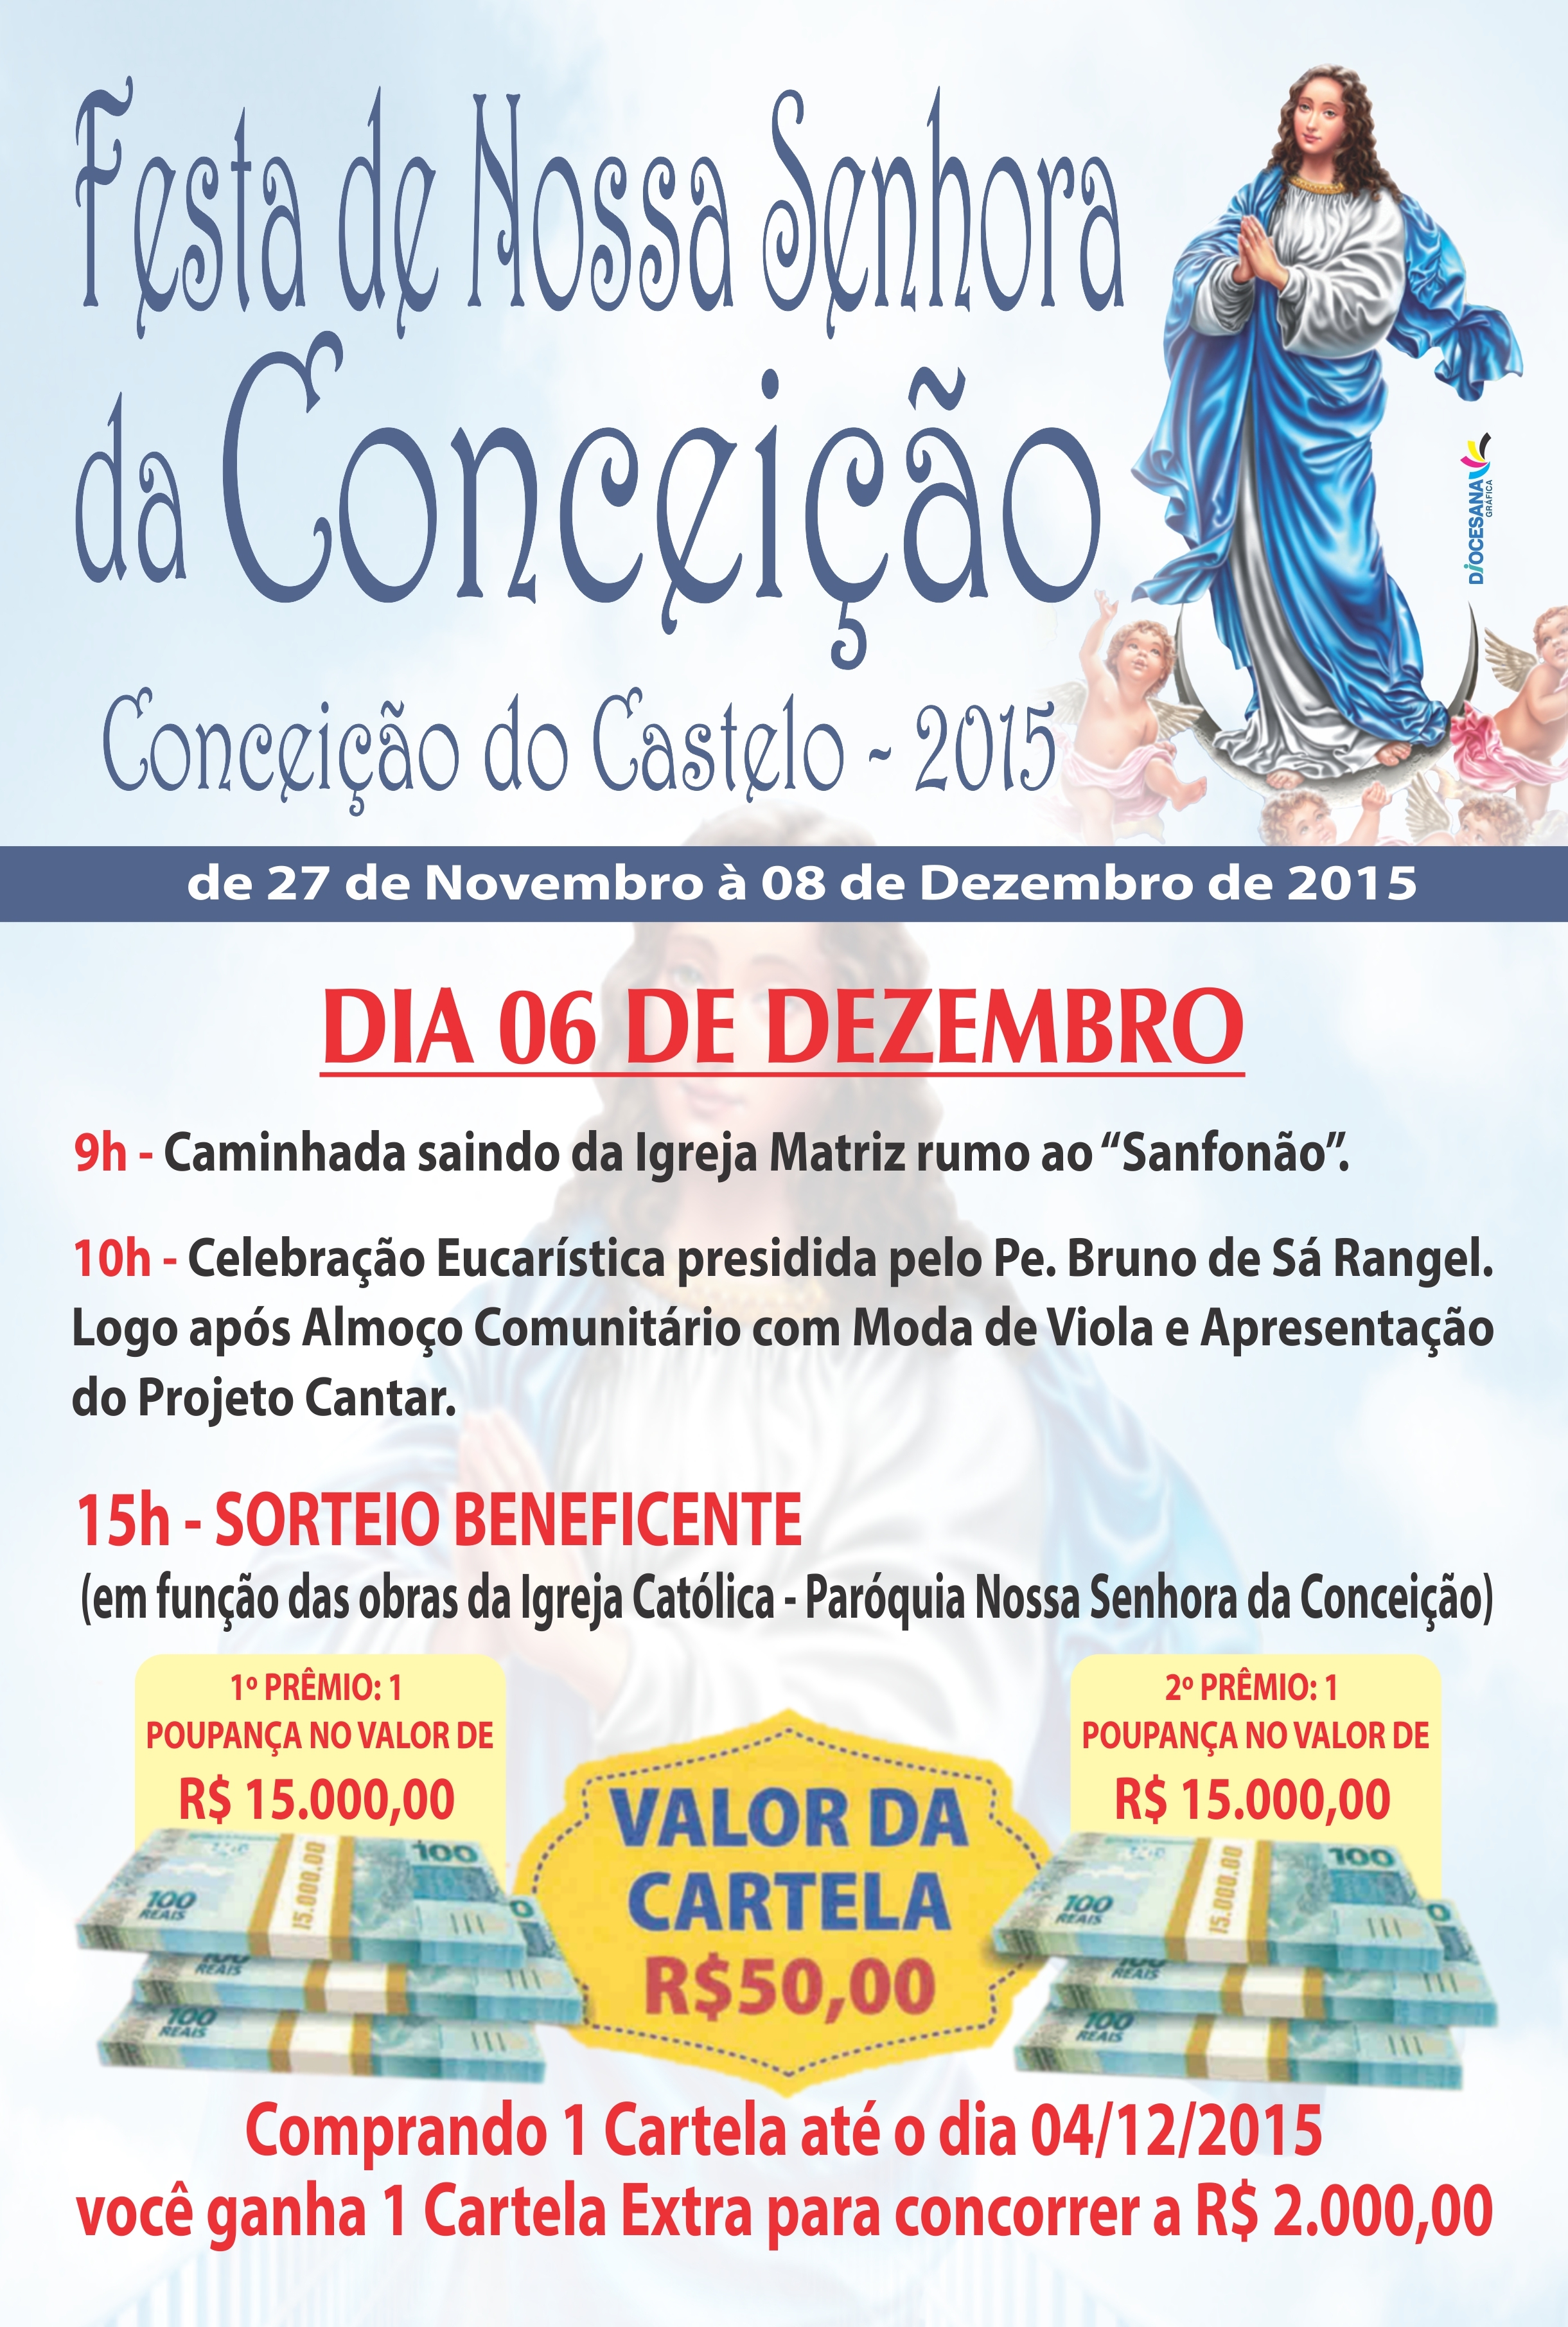 Festa da Padroeira Nossa Senhora da Conceição acontece neste final semana